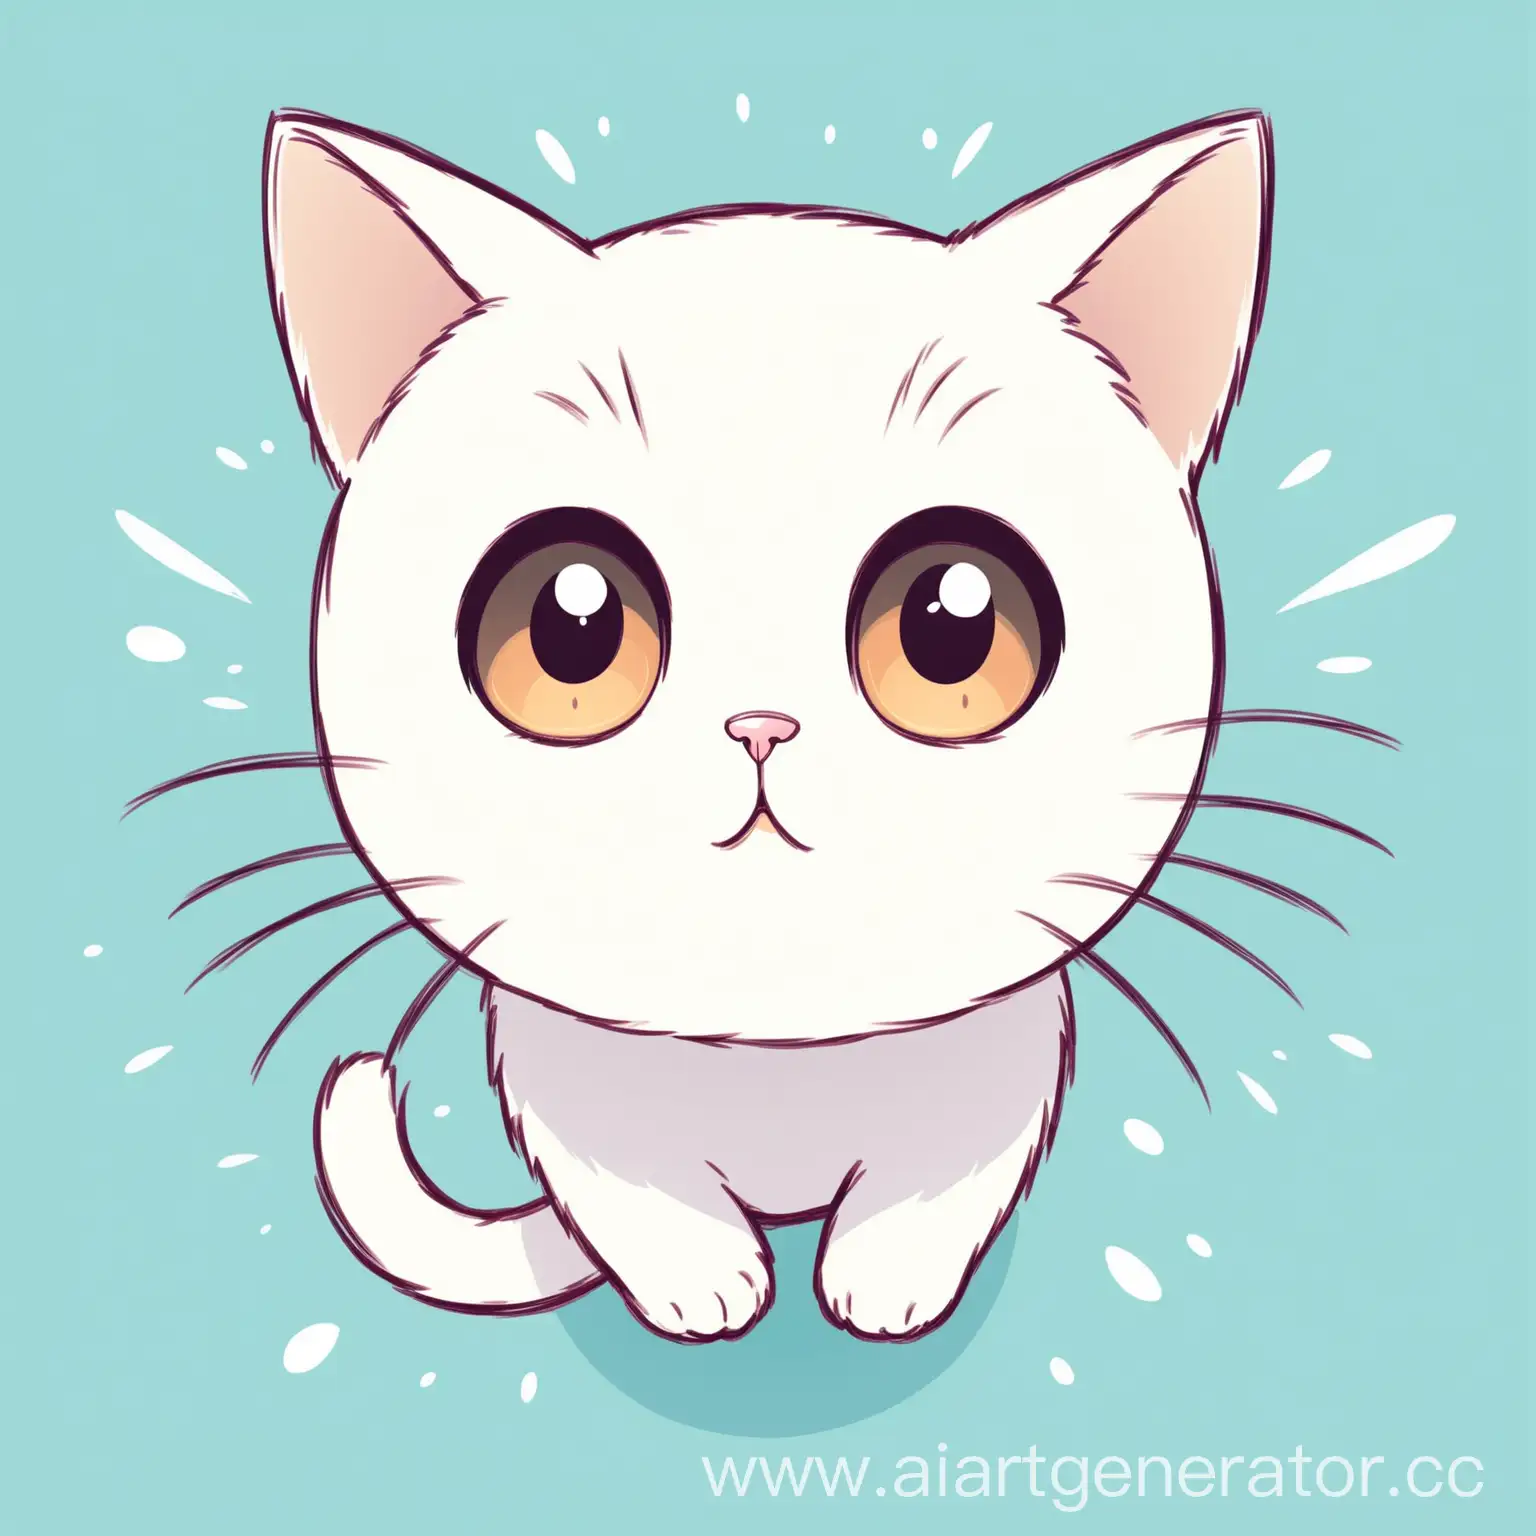 нарисованный просто линейно белый кот с большими глазами смотрит снизу мордочка в анфас 